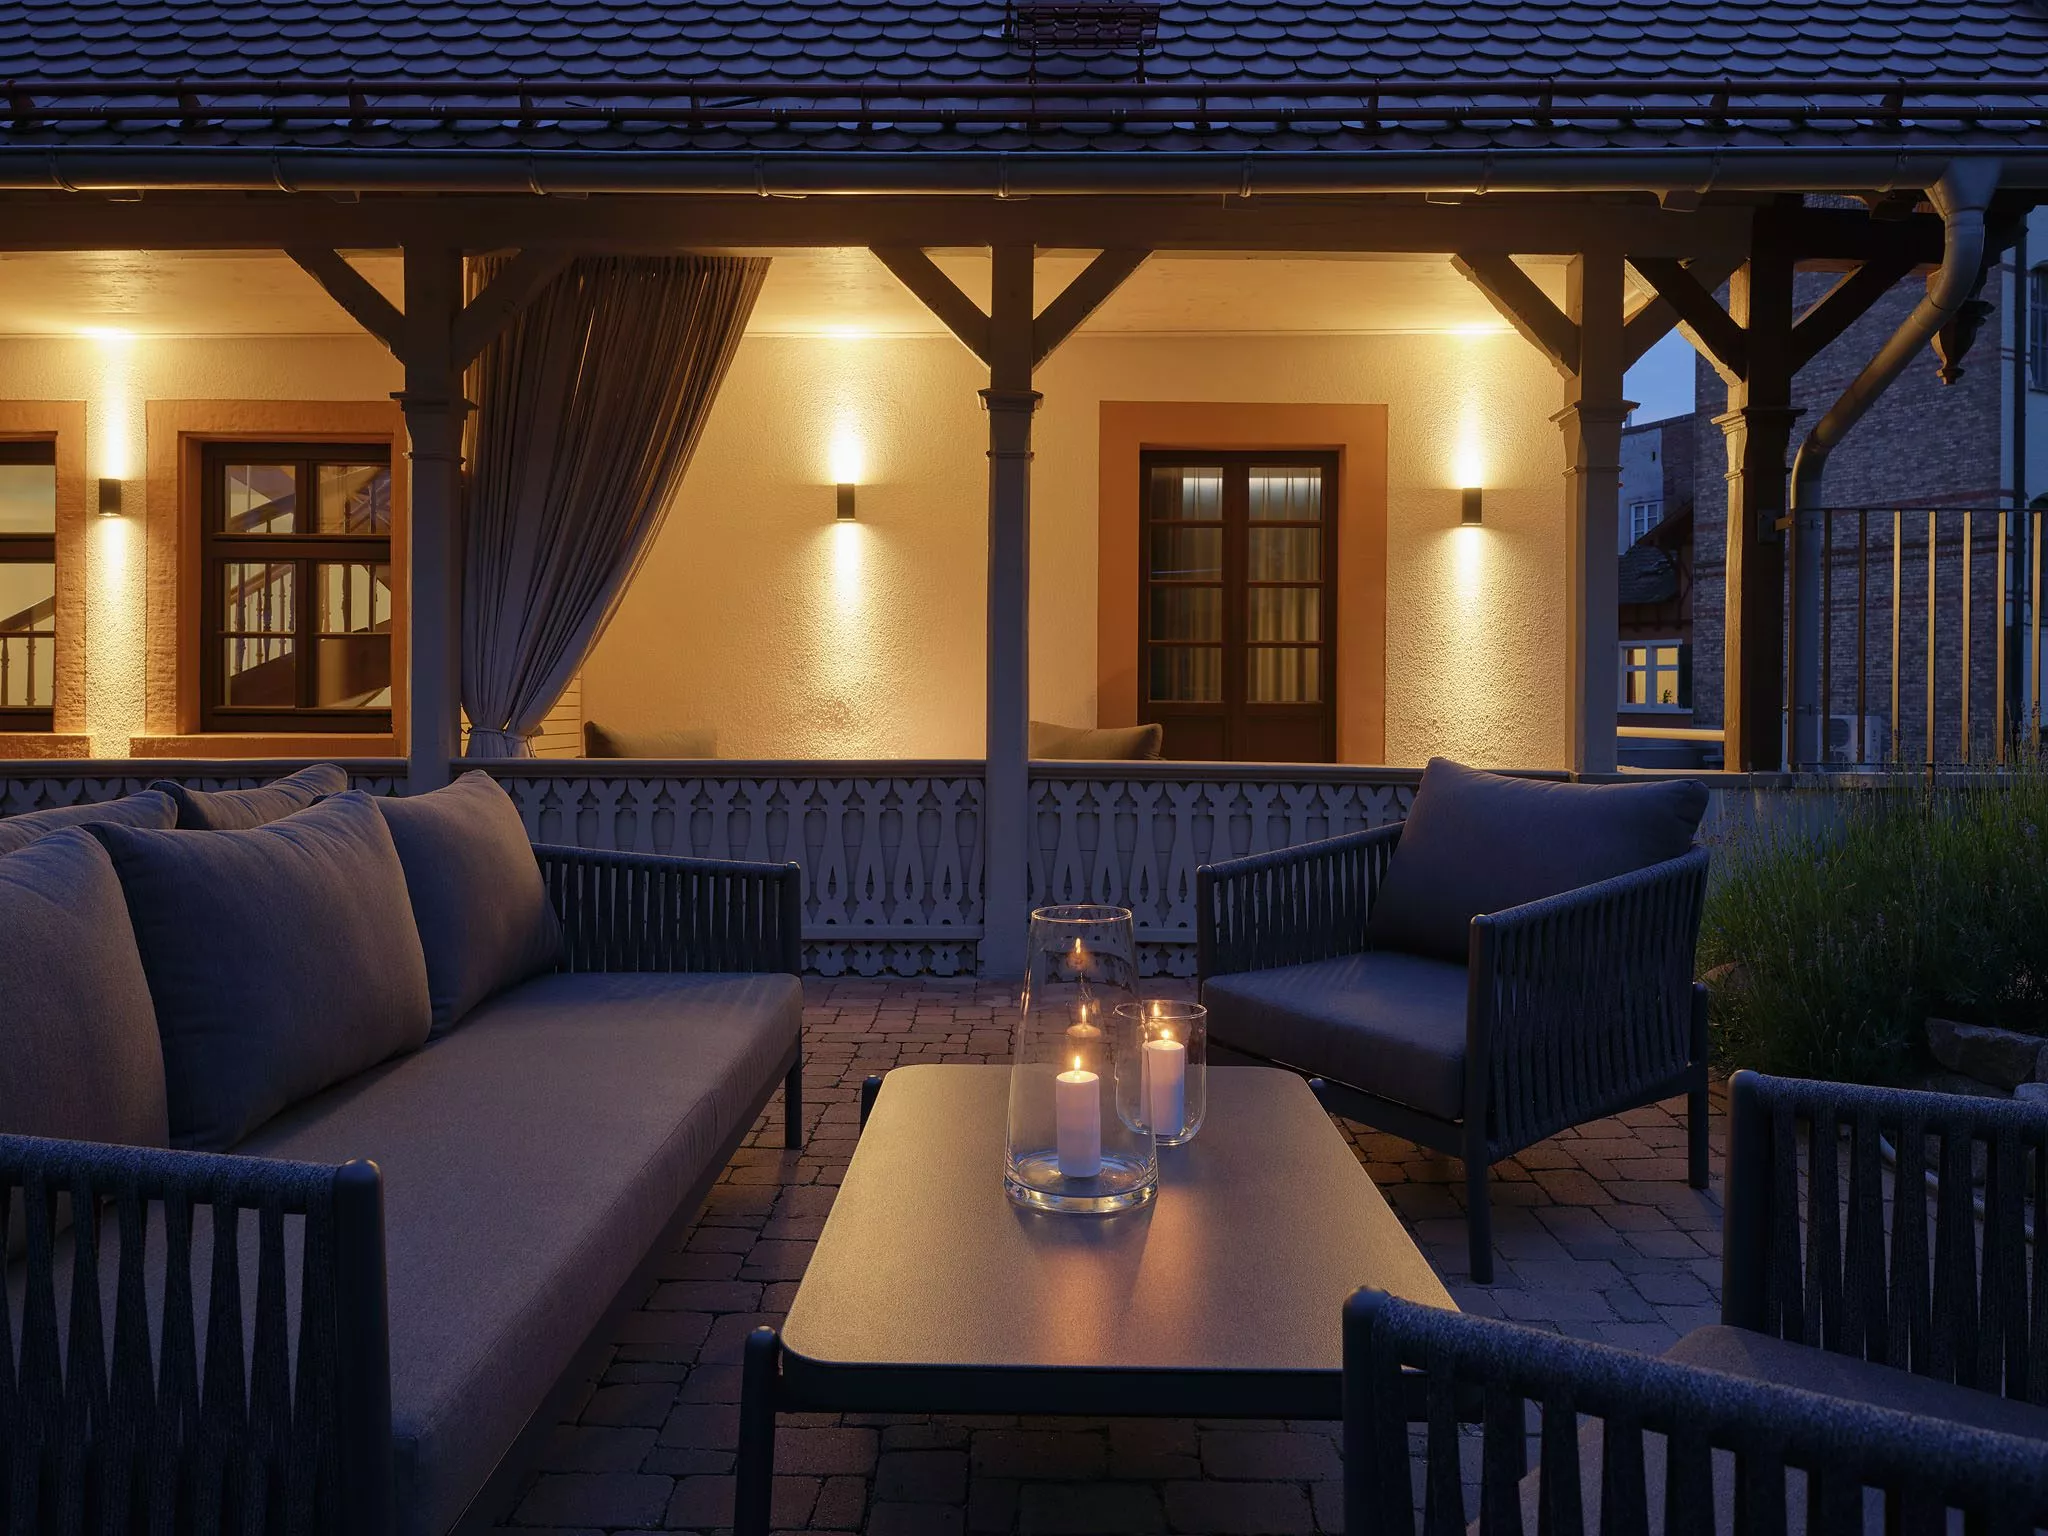 Die Dependance des Hotel am Sophienpark bietet an lauen Sommerabenden eine wunderschöne Veranda zum Sitzen